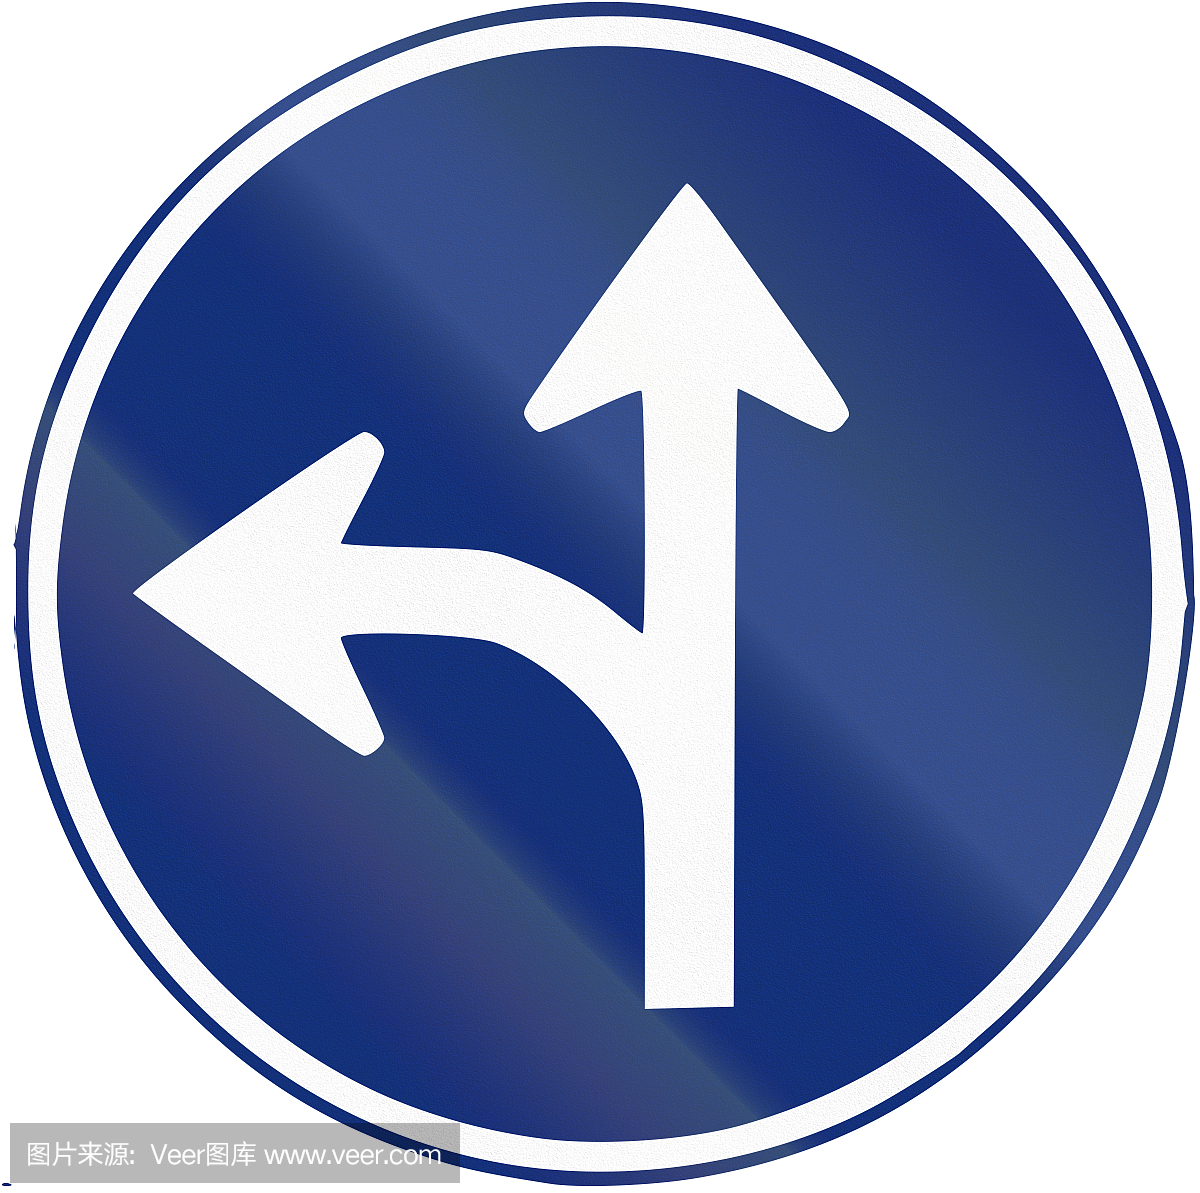 在西班牙使用的路牌 - 左转或直行